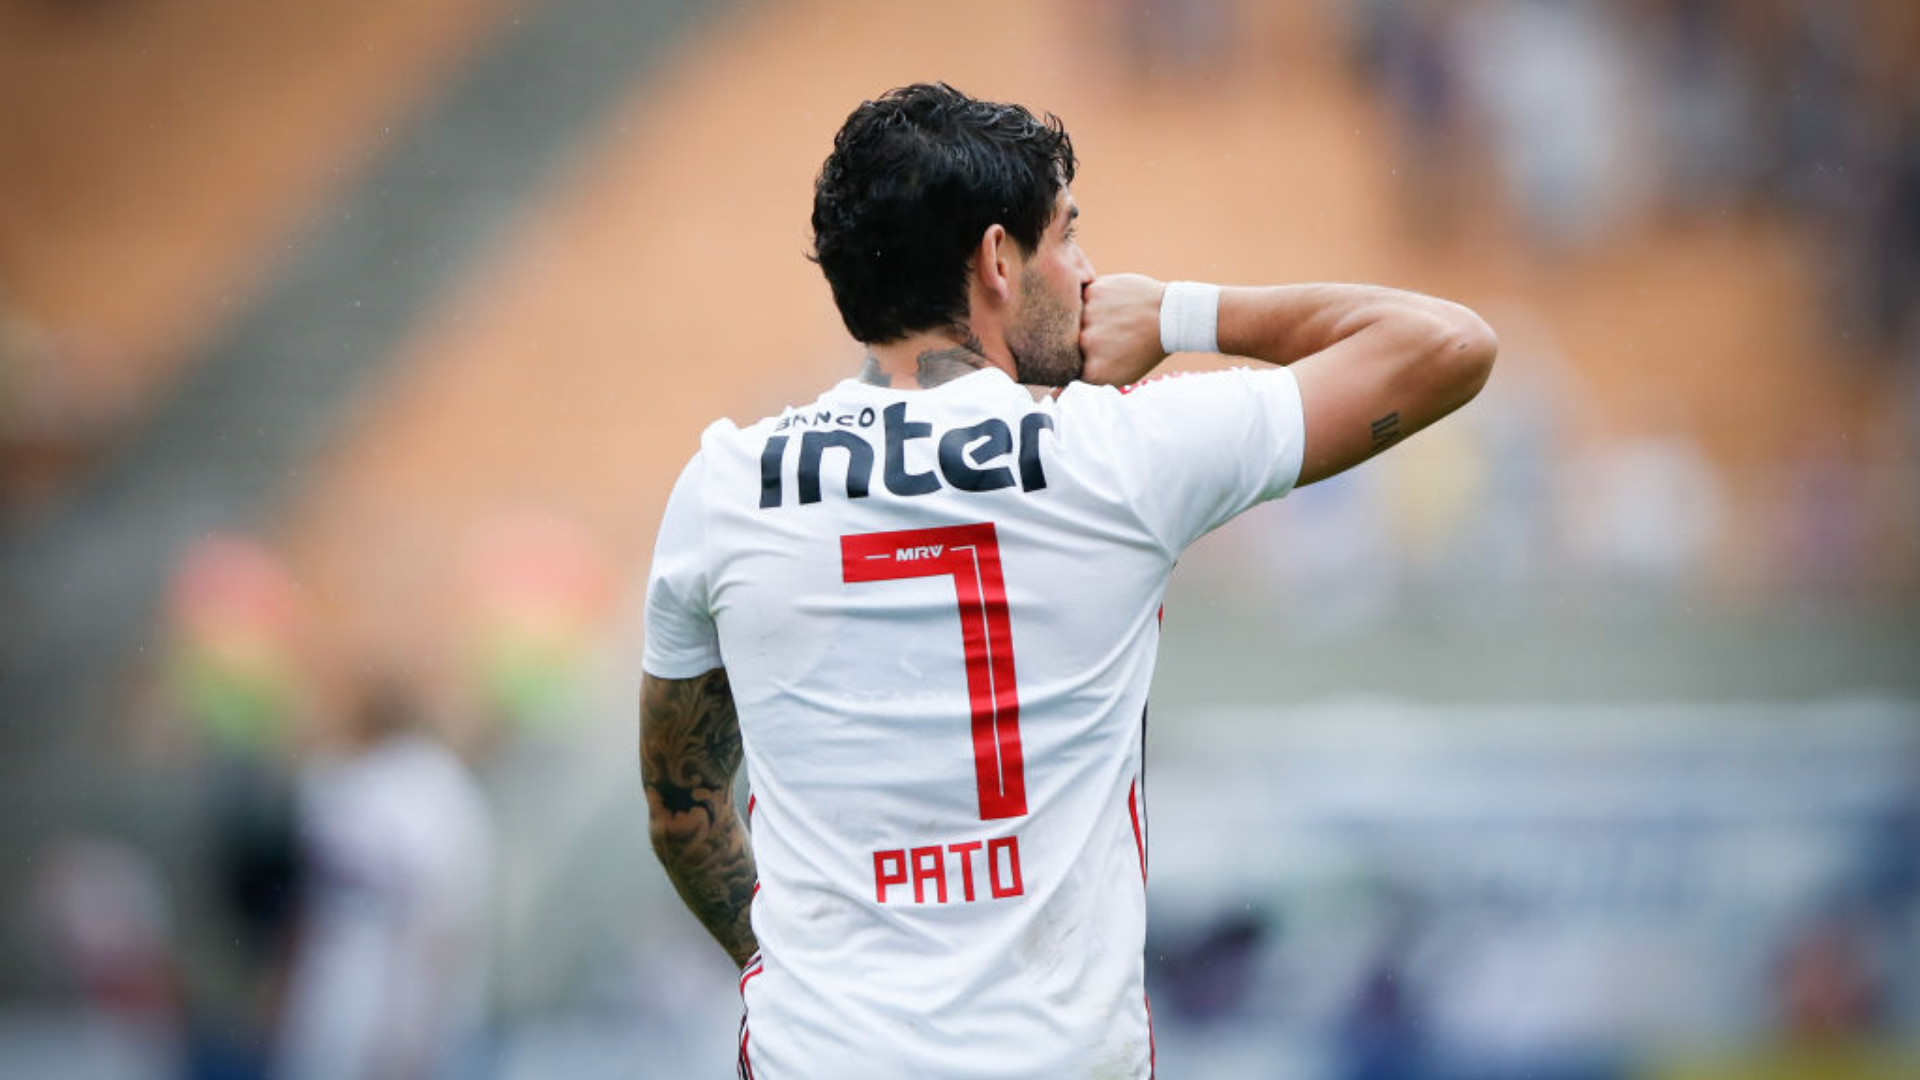 Pato chega para sua terceira passagem pelo Tricolor (Crédito: Getty Images)